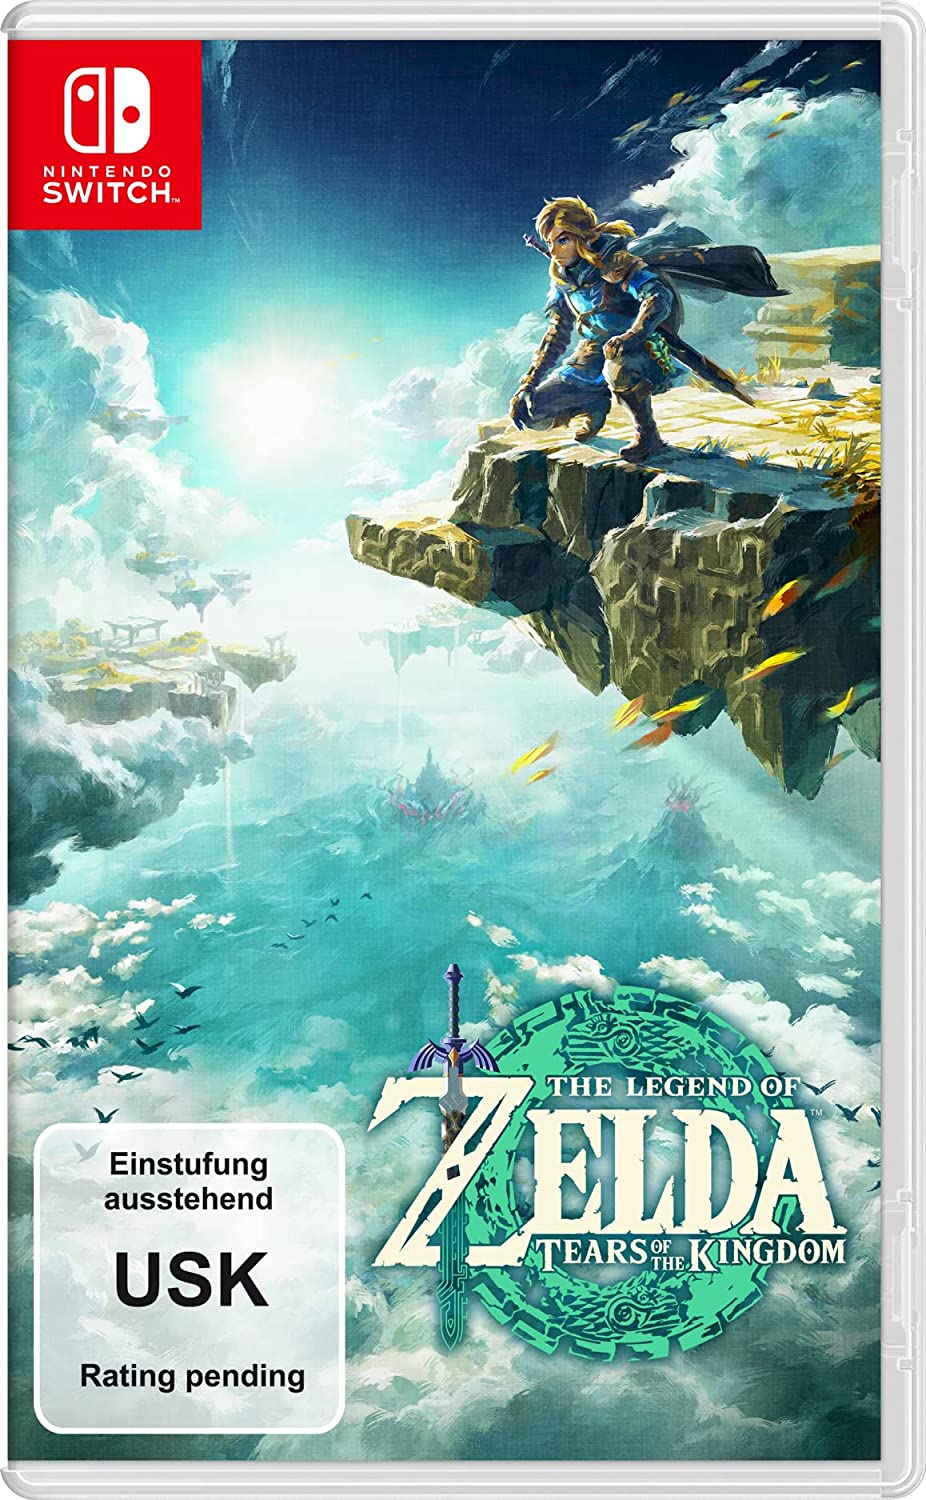 The Legend of Zelda: Tears of the Kingdom PAL Packshot